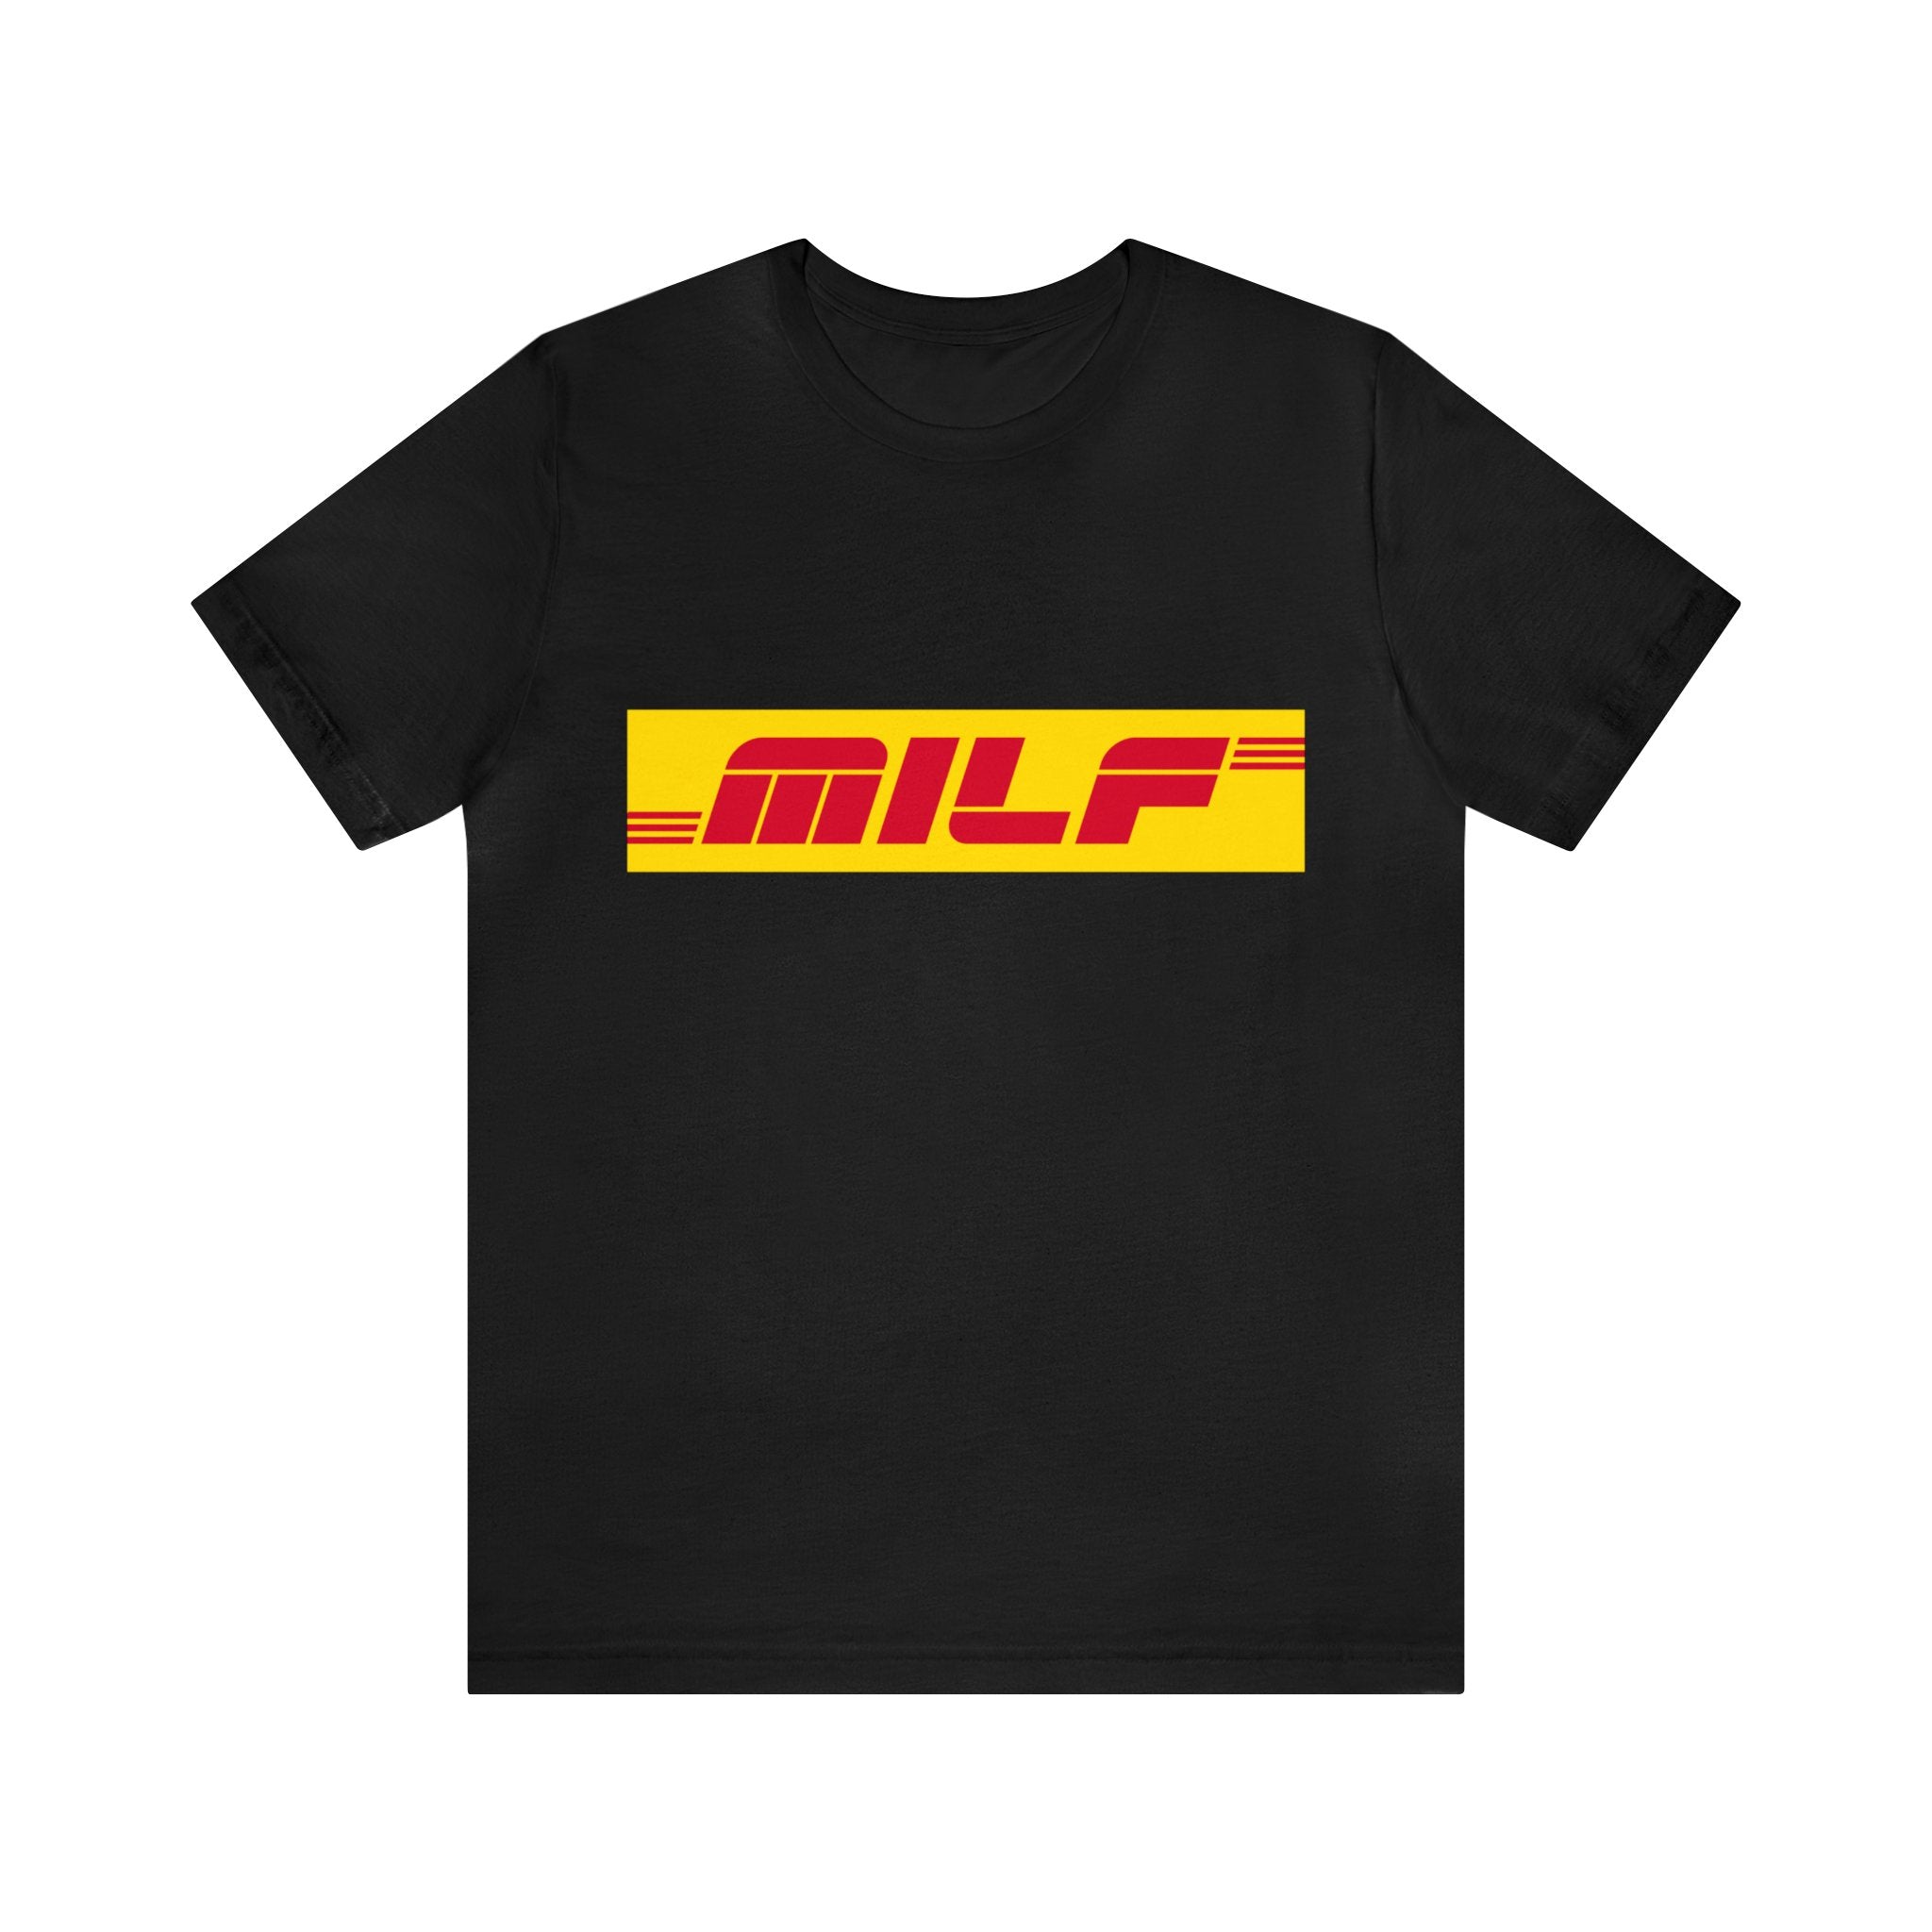 MILF T-Shirt